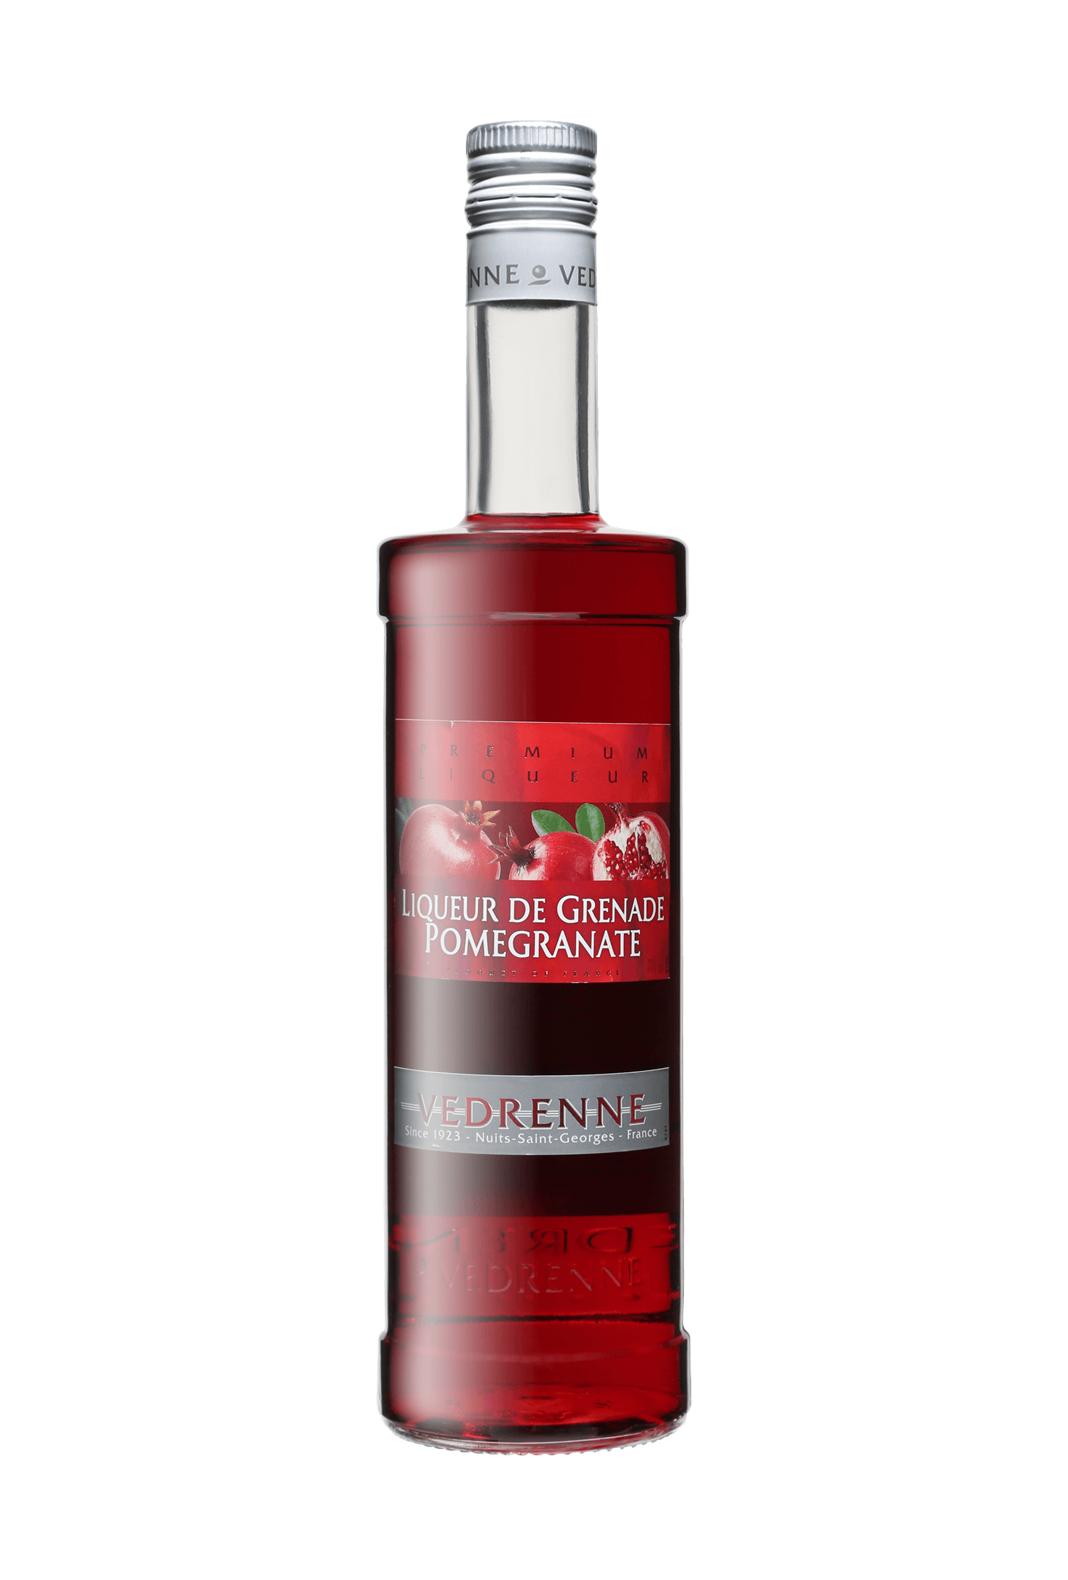 Vedrenne Liqueur de Grenade (Pomegranate) 15% 700ml - Fruit Liqueur - Liquor Wine Cave